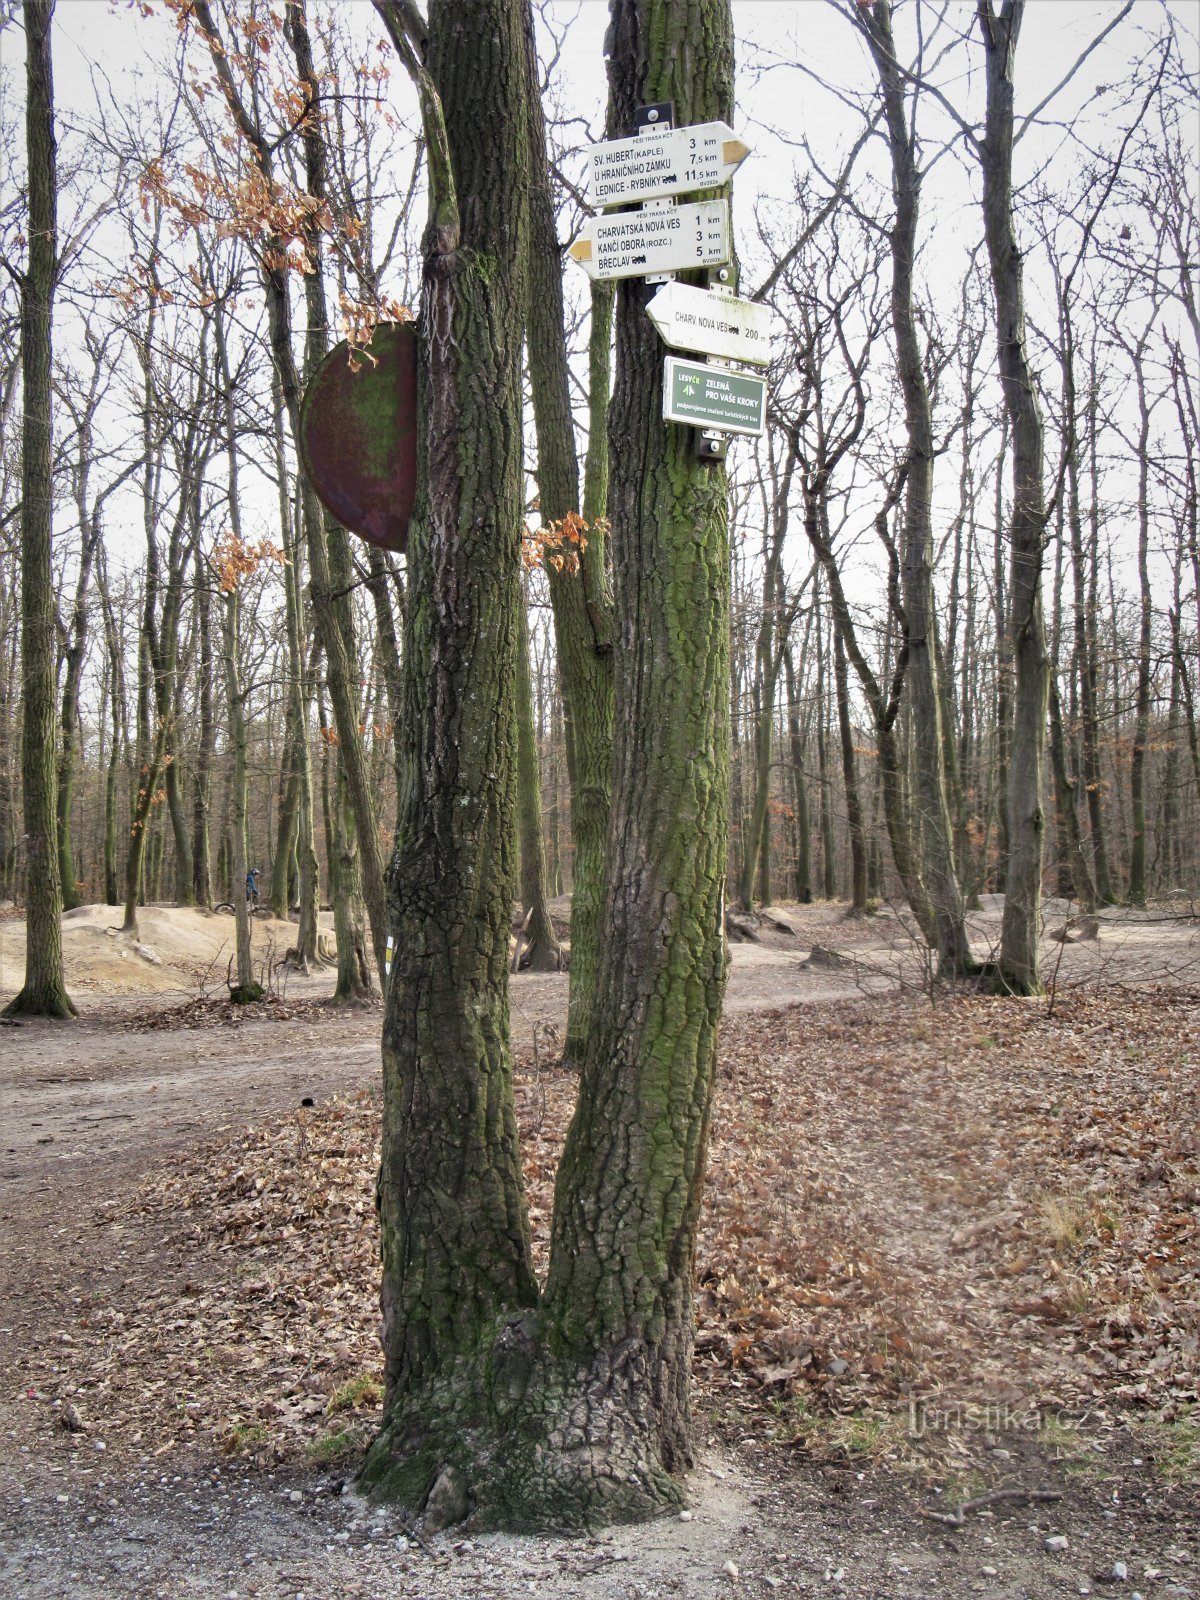 Le carrefour touristique Charvátská Nová Ves, voie ferrée, est situé à l'orée de la forêt